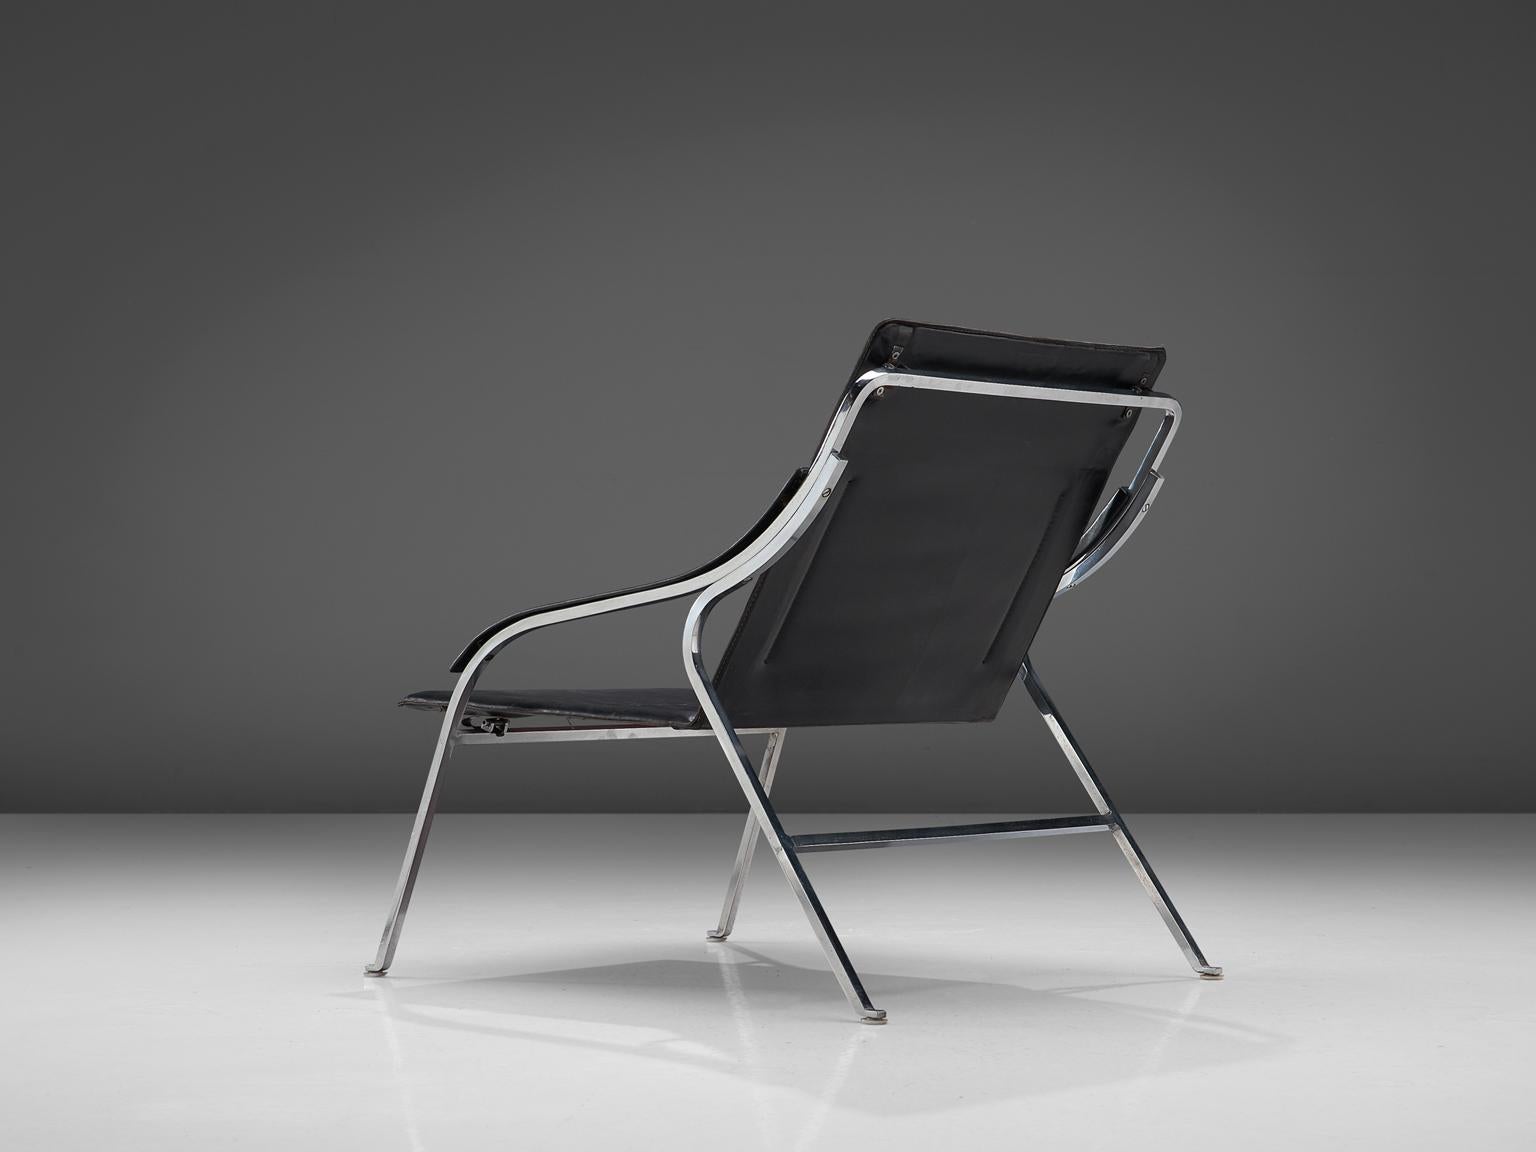 Marco Zanuso pour Arflex, cuir et acier chromé, Italie, 1964.

Cette chaise longue de Zanuso reste parmi les meilleurs exemples de fauteuils conçus par l'architecte. Ce n'est pas seulement son ingénieux design élancé qui le distingue, mais aussi les